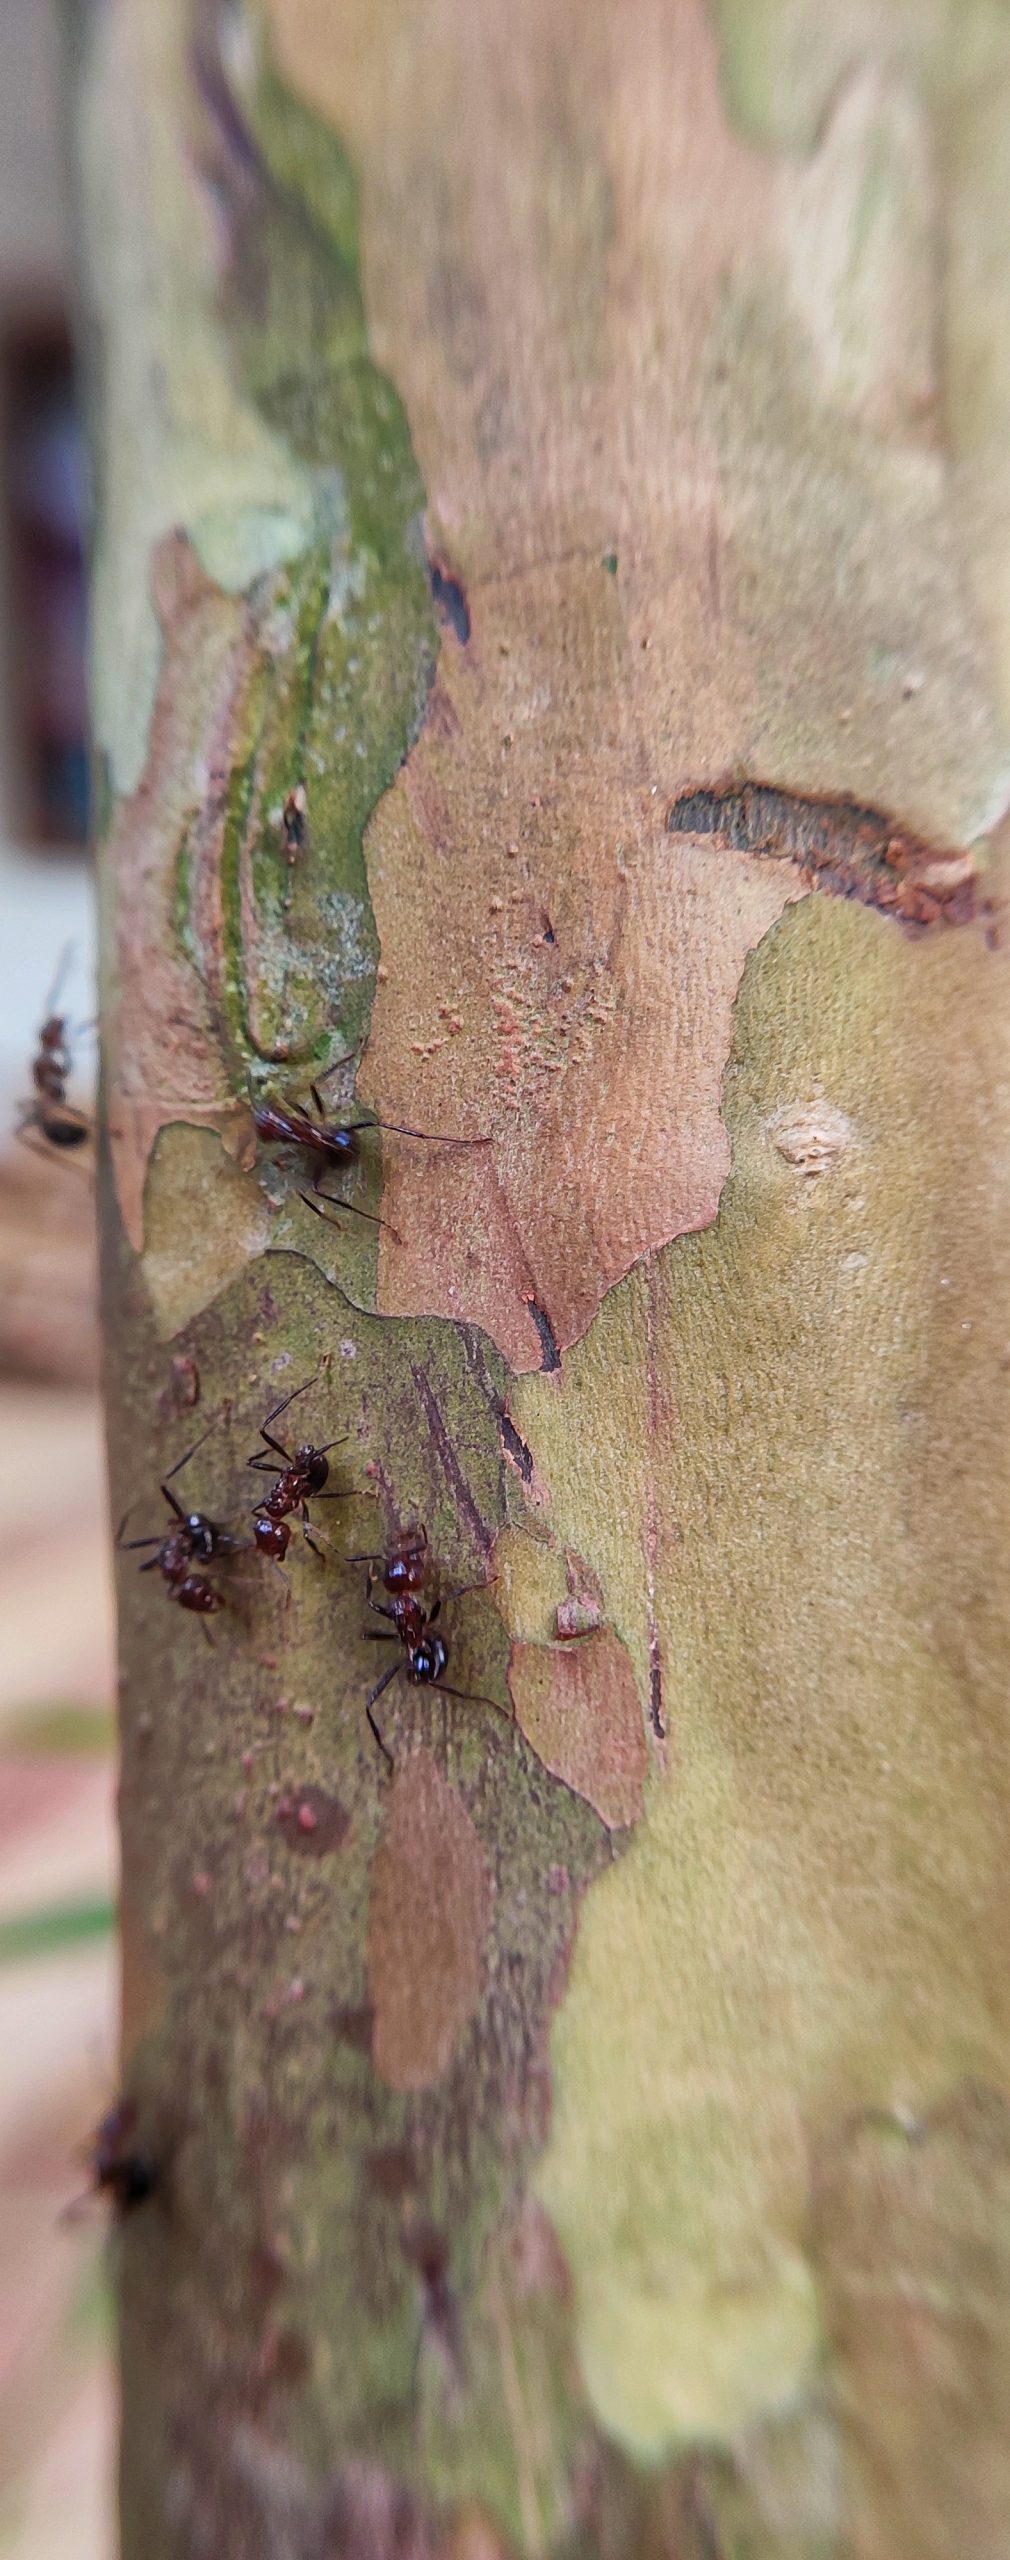 Ants on tree